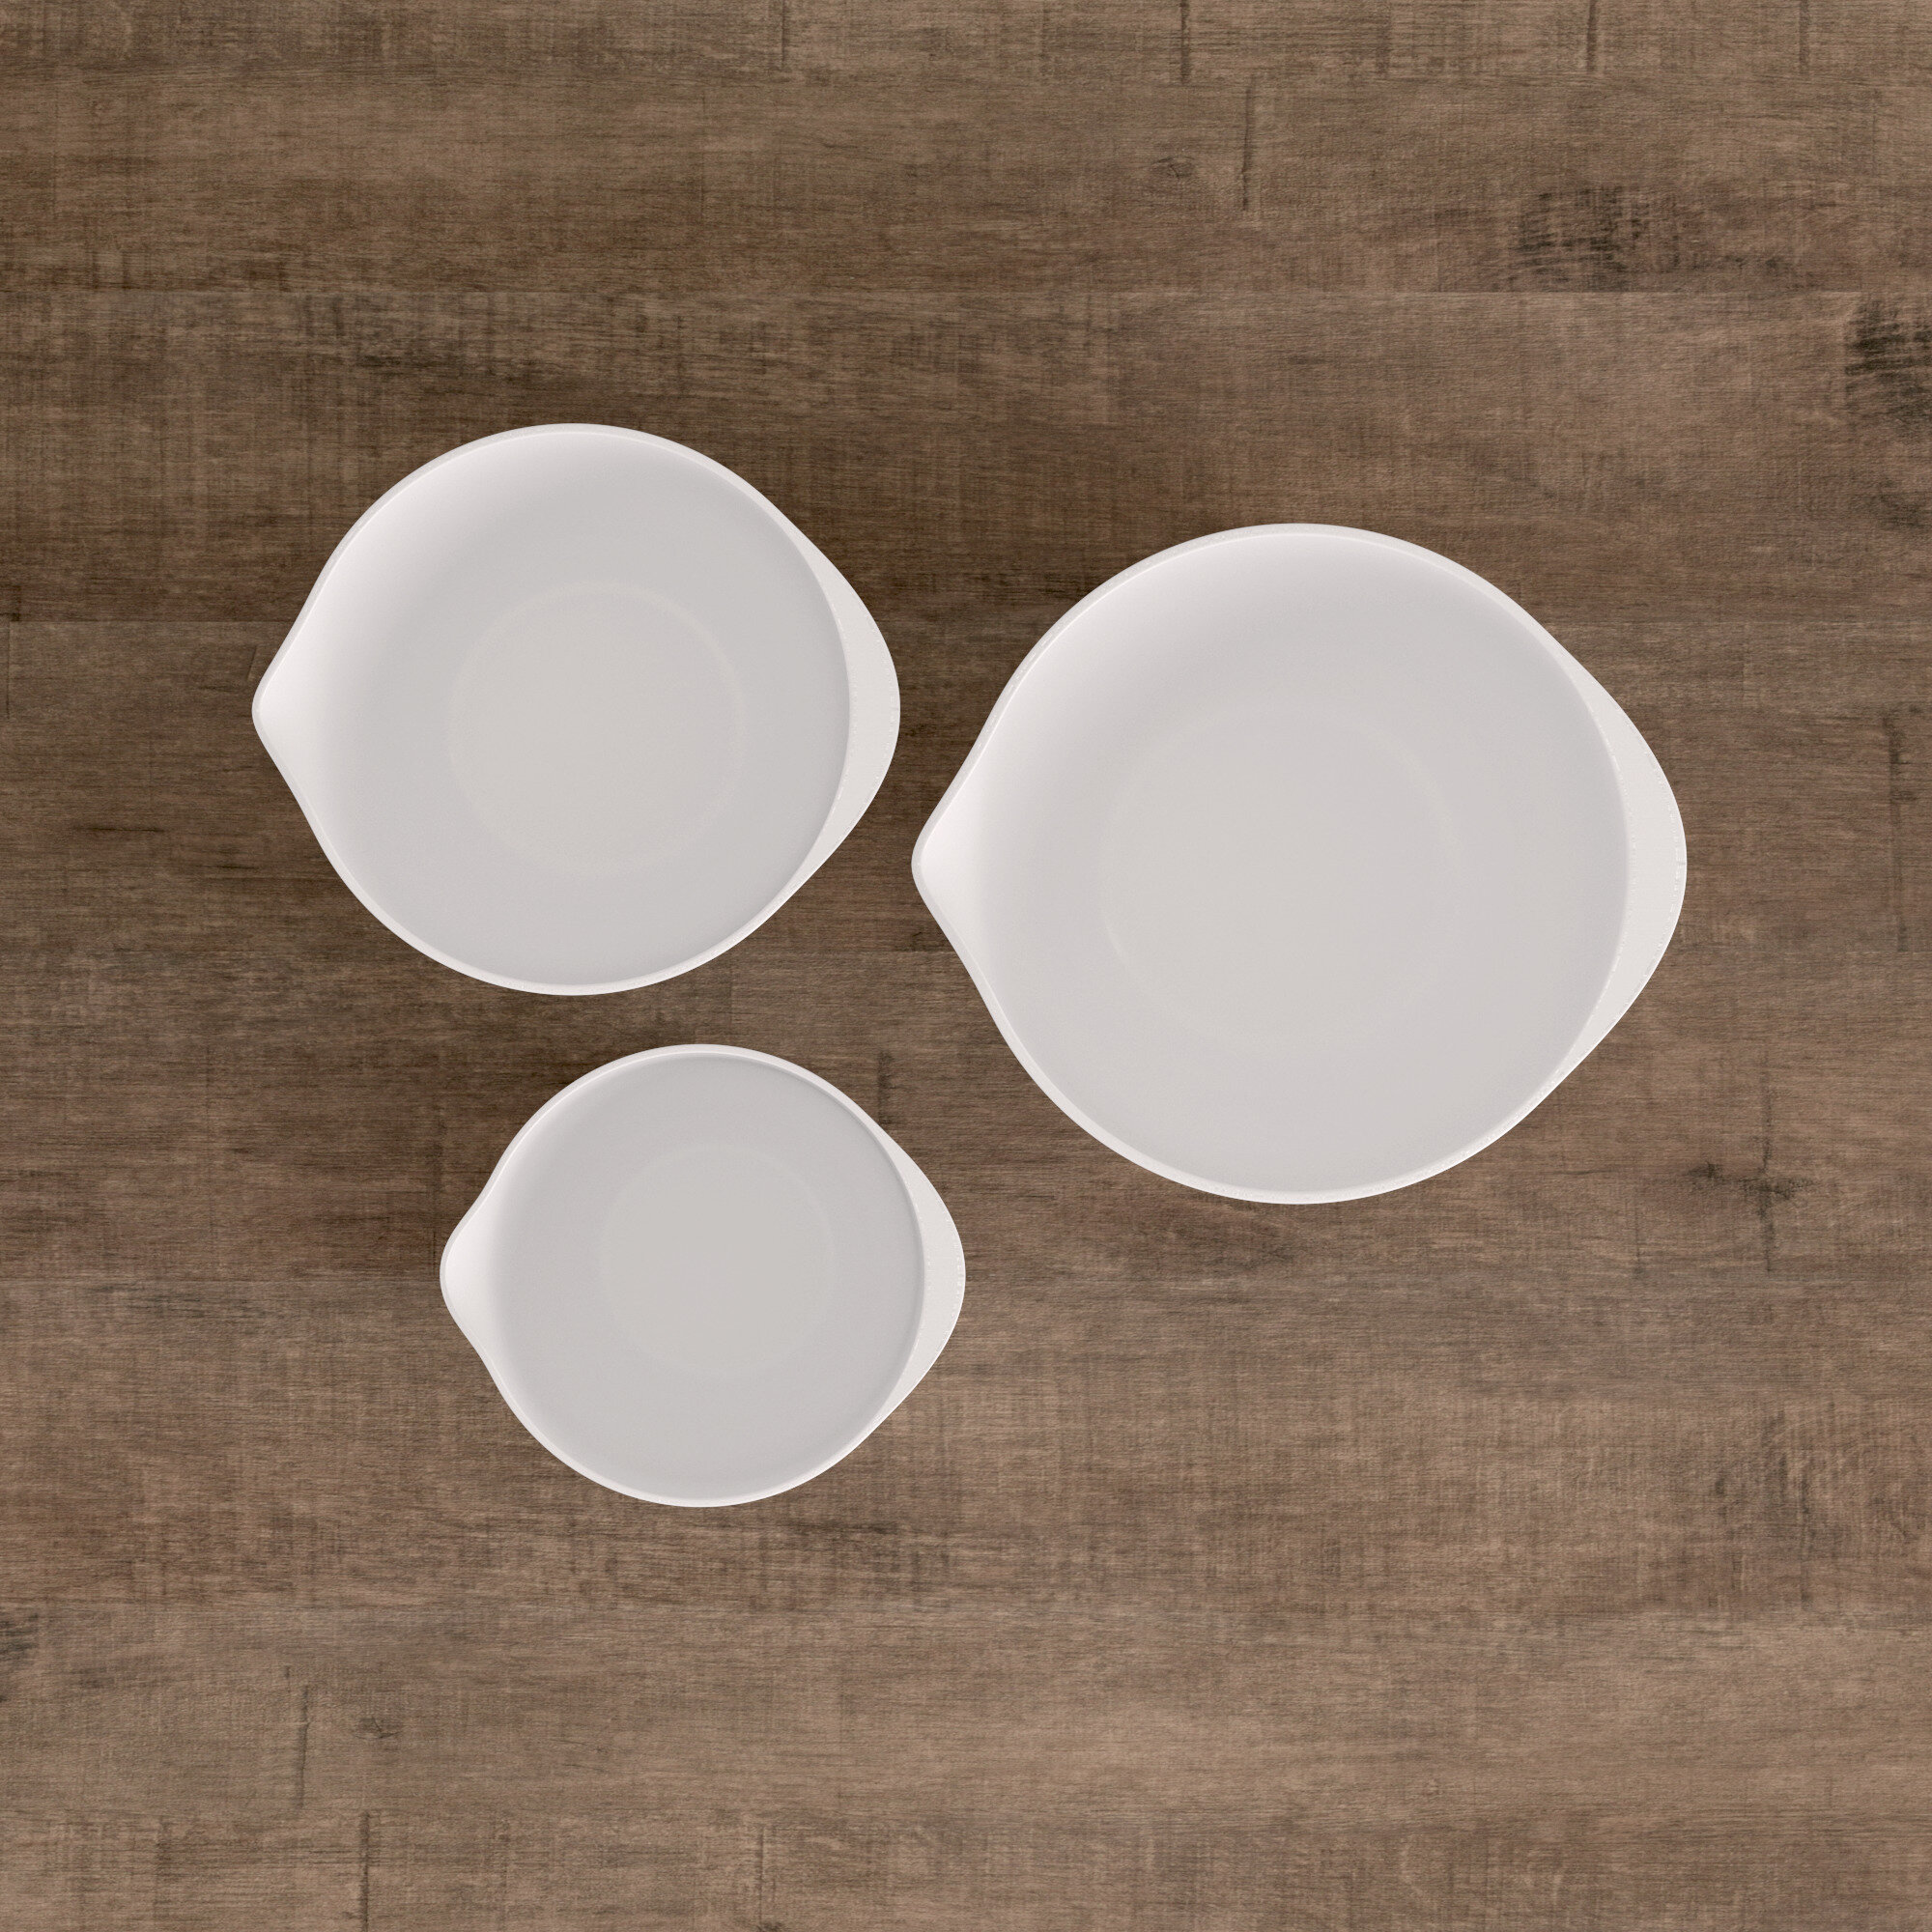 Melamine Pour Spout Bowls, Set of 3, White